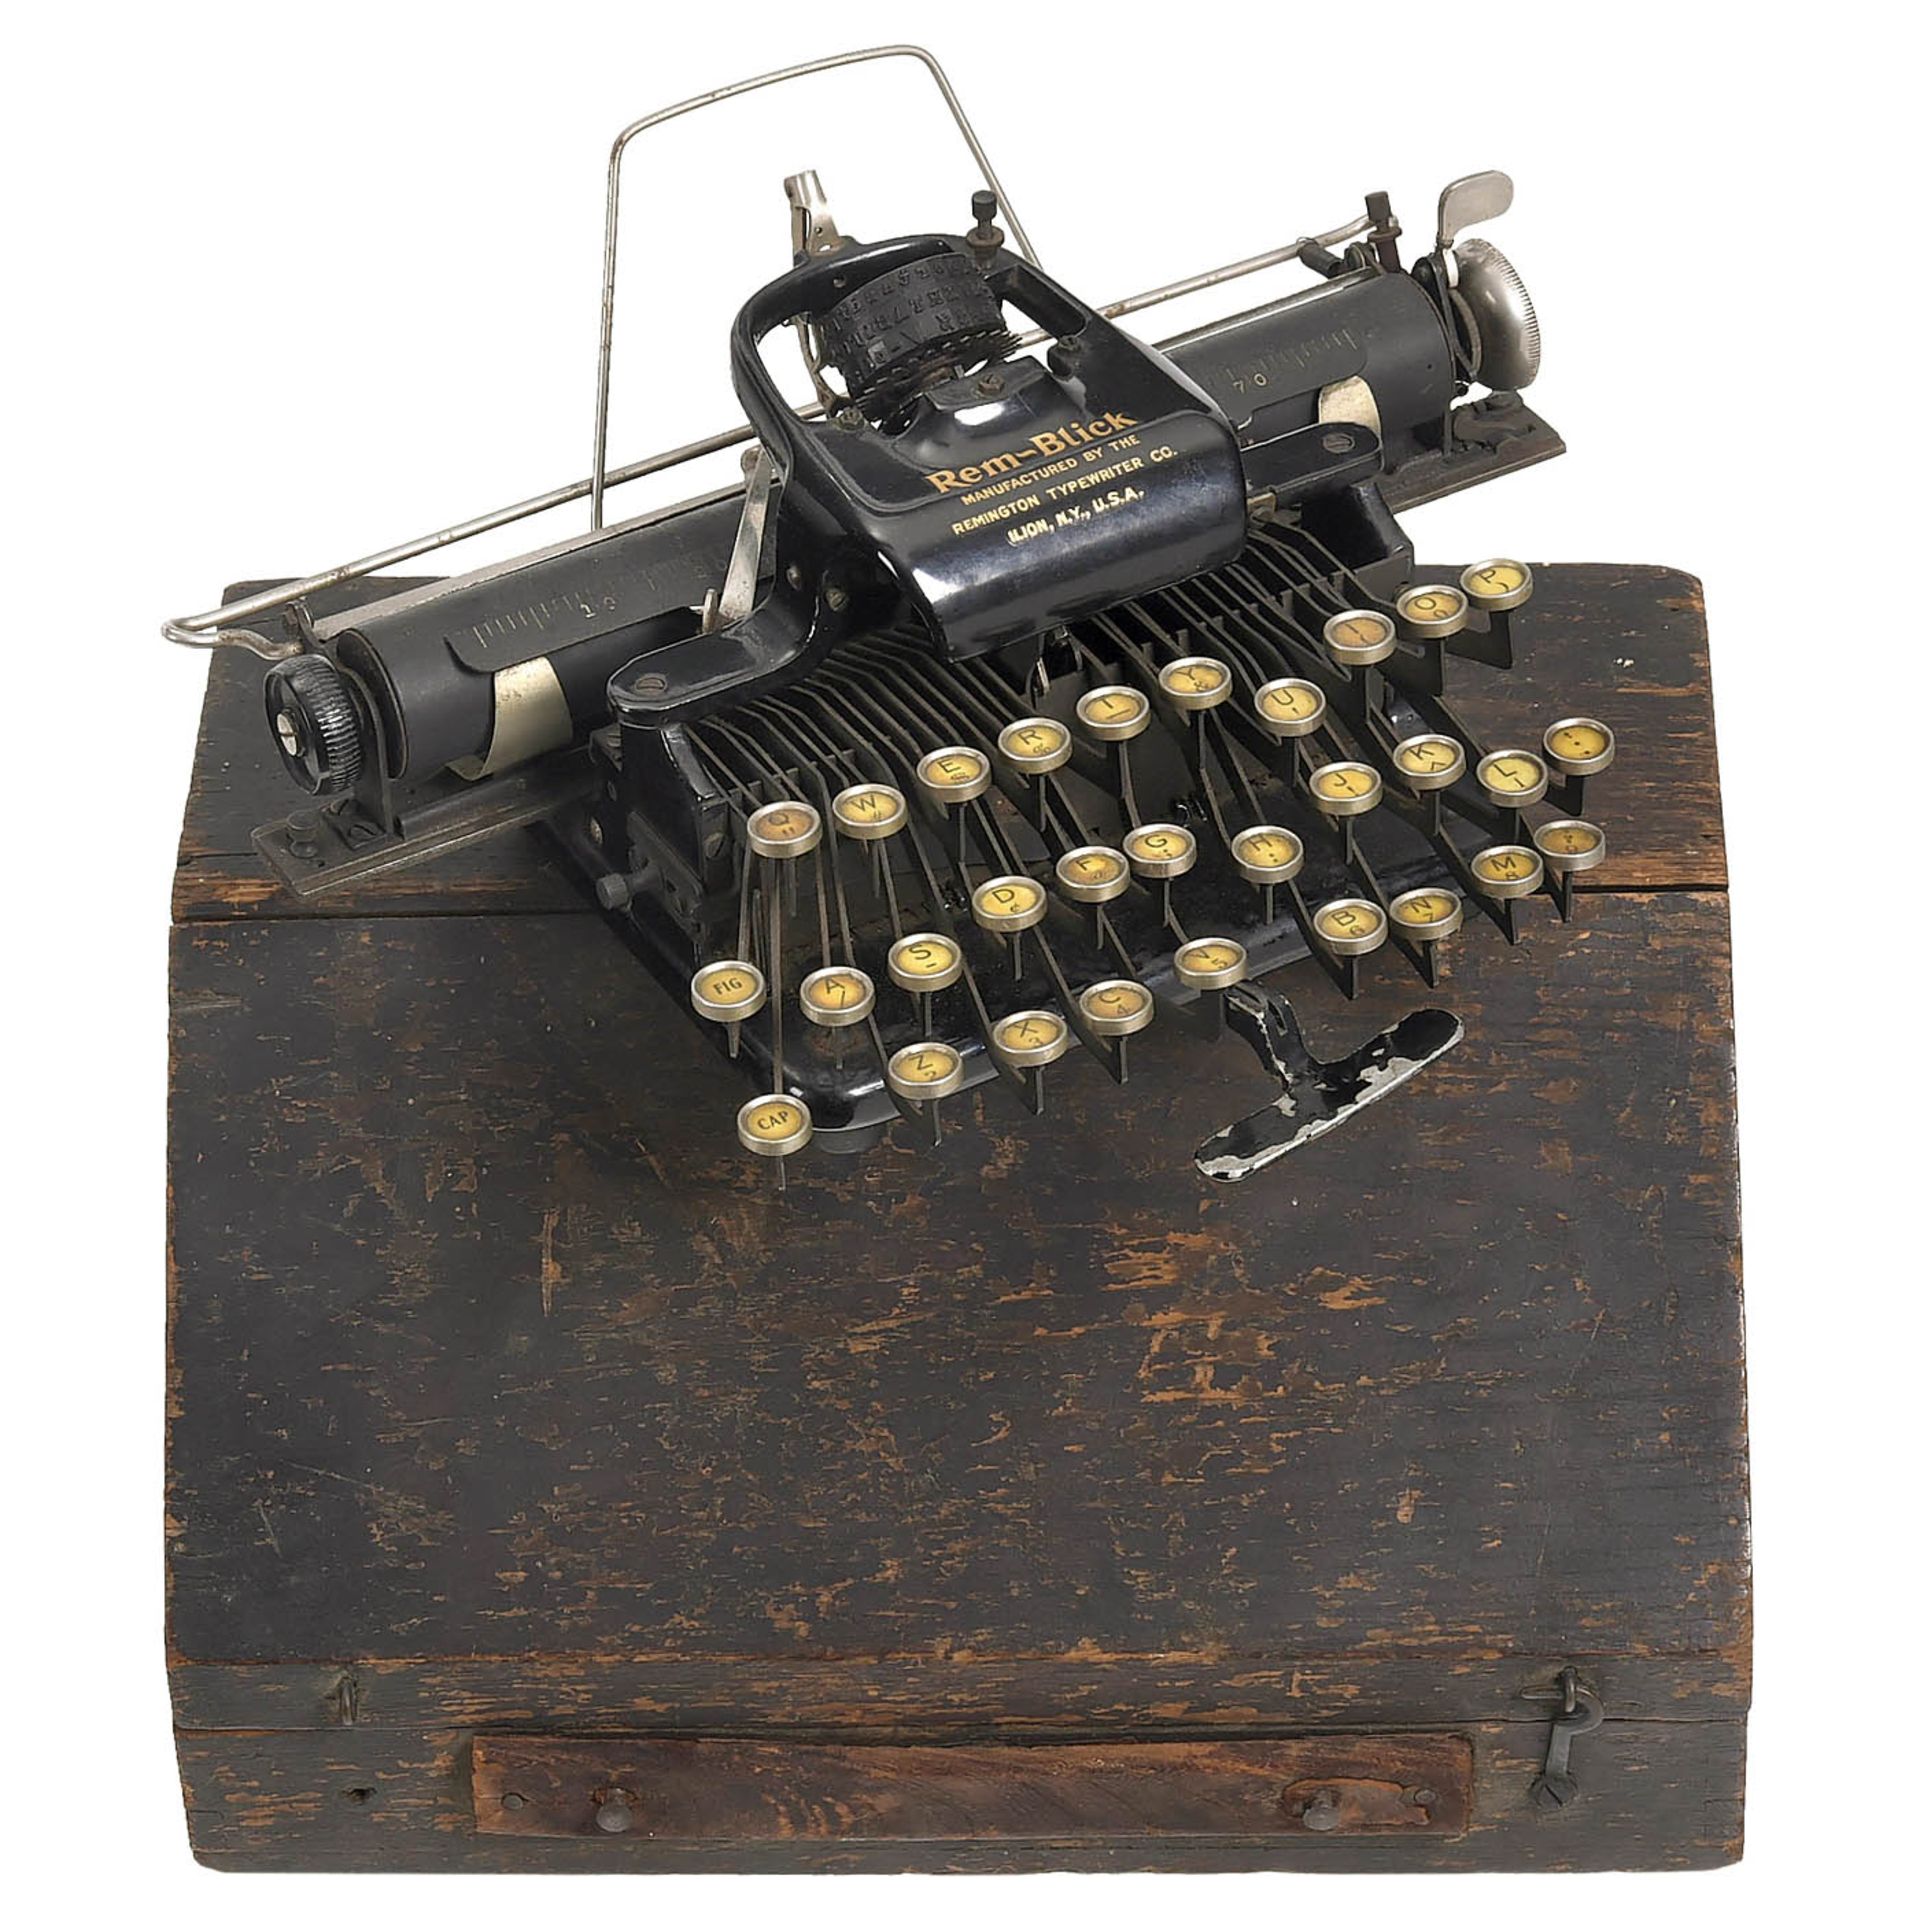 3 Blickensderfer Typewriters - Bild 3 aus 4